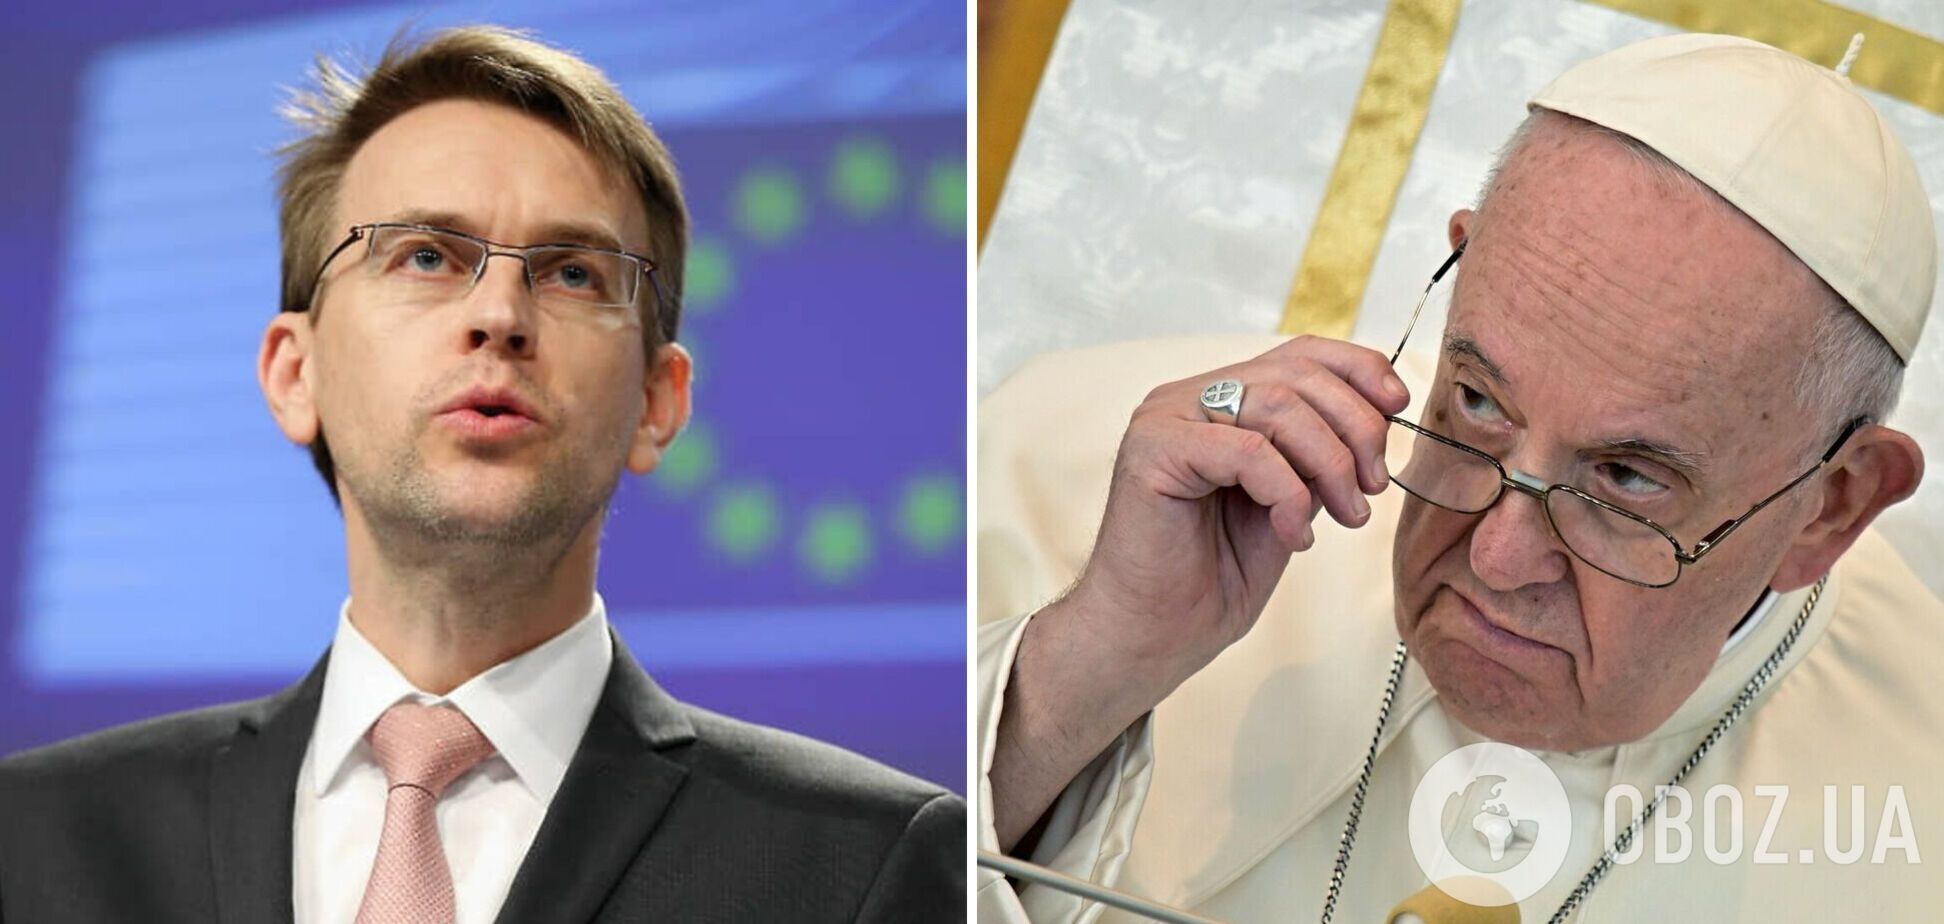 'Мир має бути справедливим': в ЄС дали офіційну відповідь Папі Римському на слова про 'білий прапор'